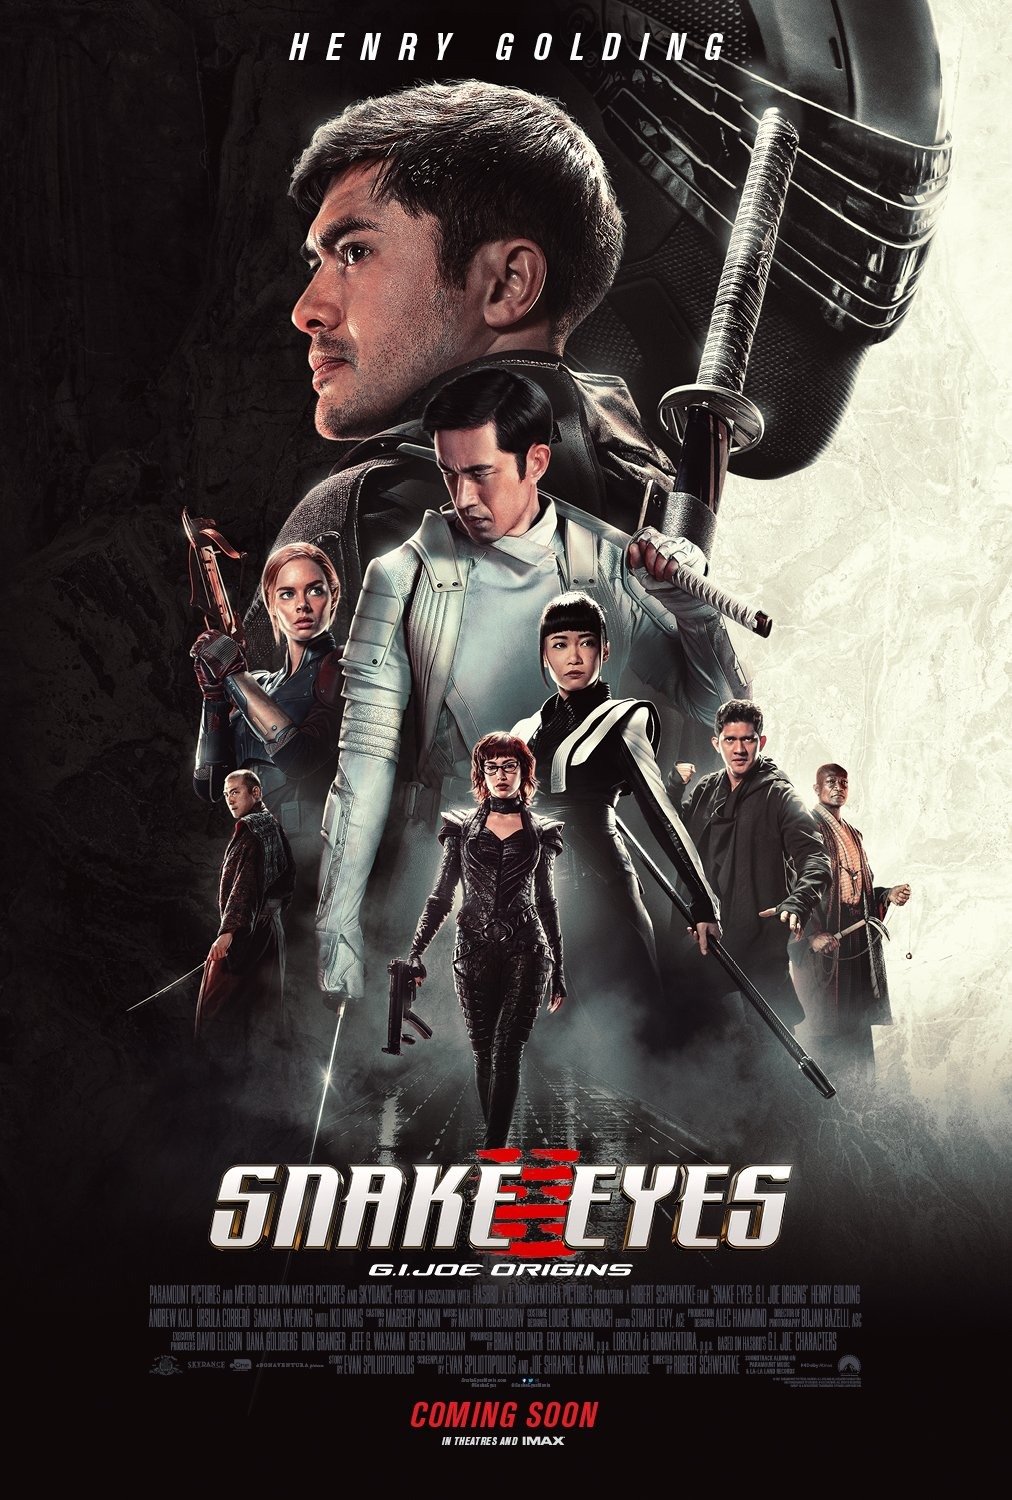 Snake Eyes : Affiche